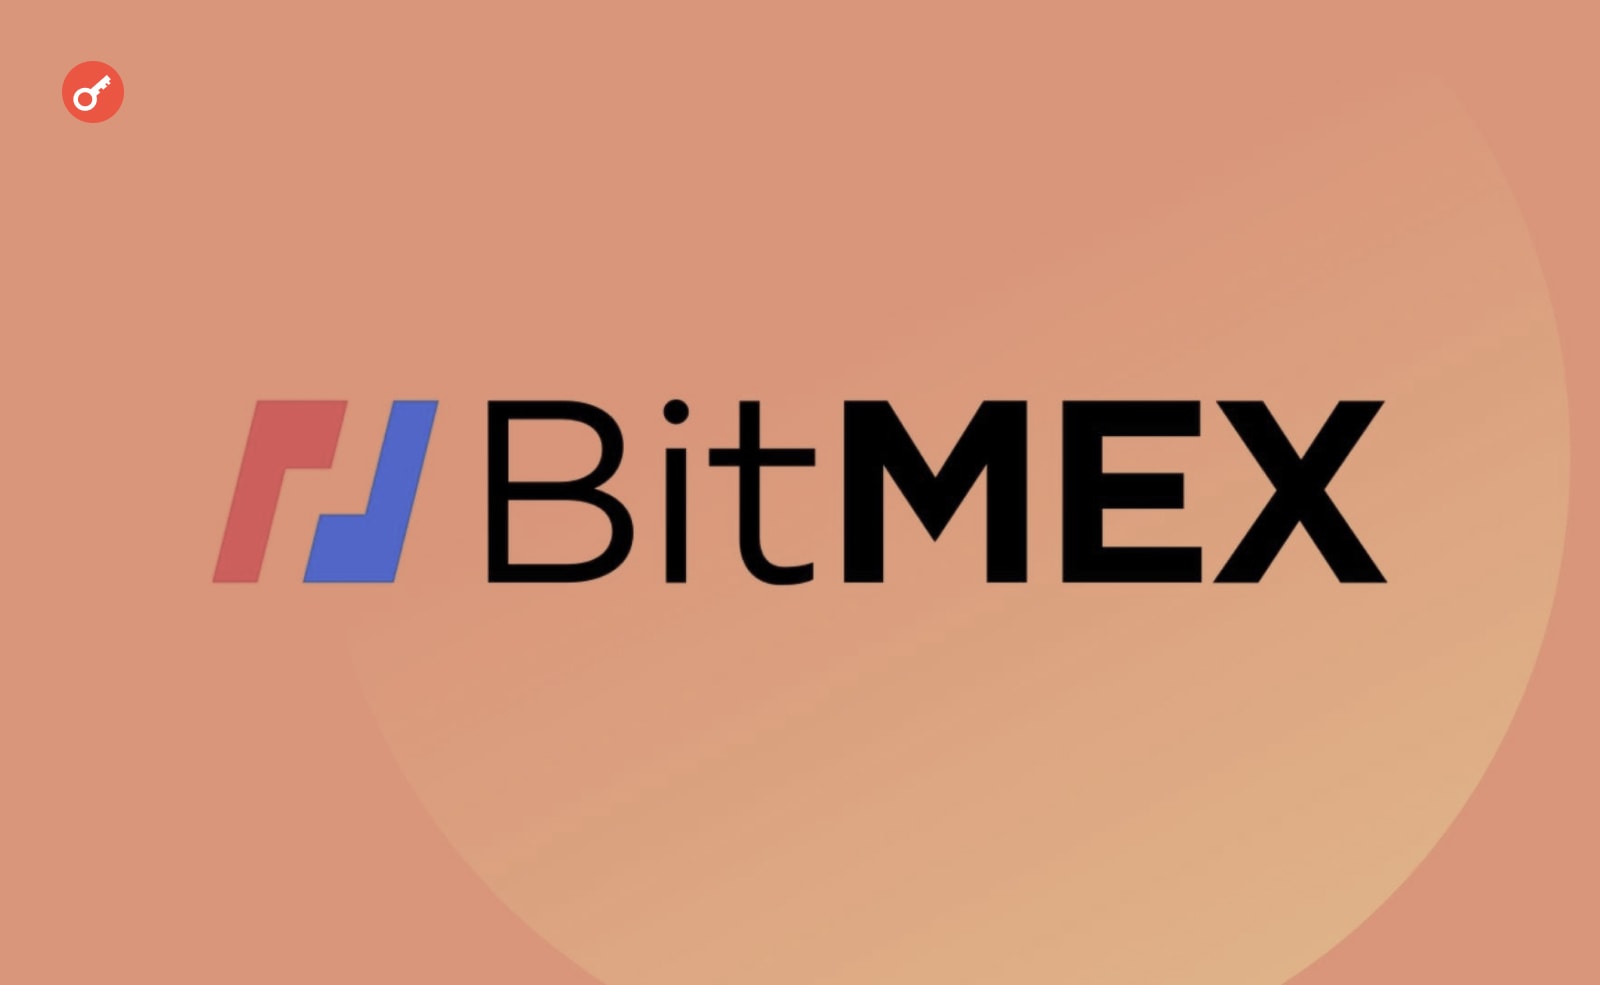 CEO BitMEX: «Мы прошли через ад. Но сейчас есть признаки улучшения ситуации». Заглавный коллаж новости.